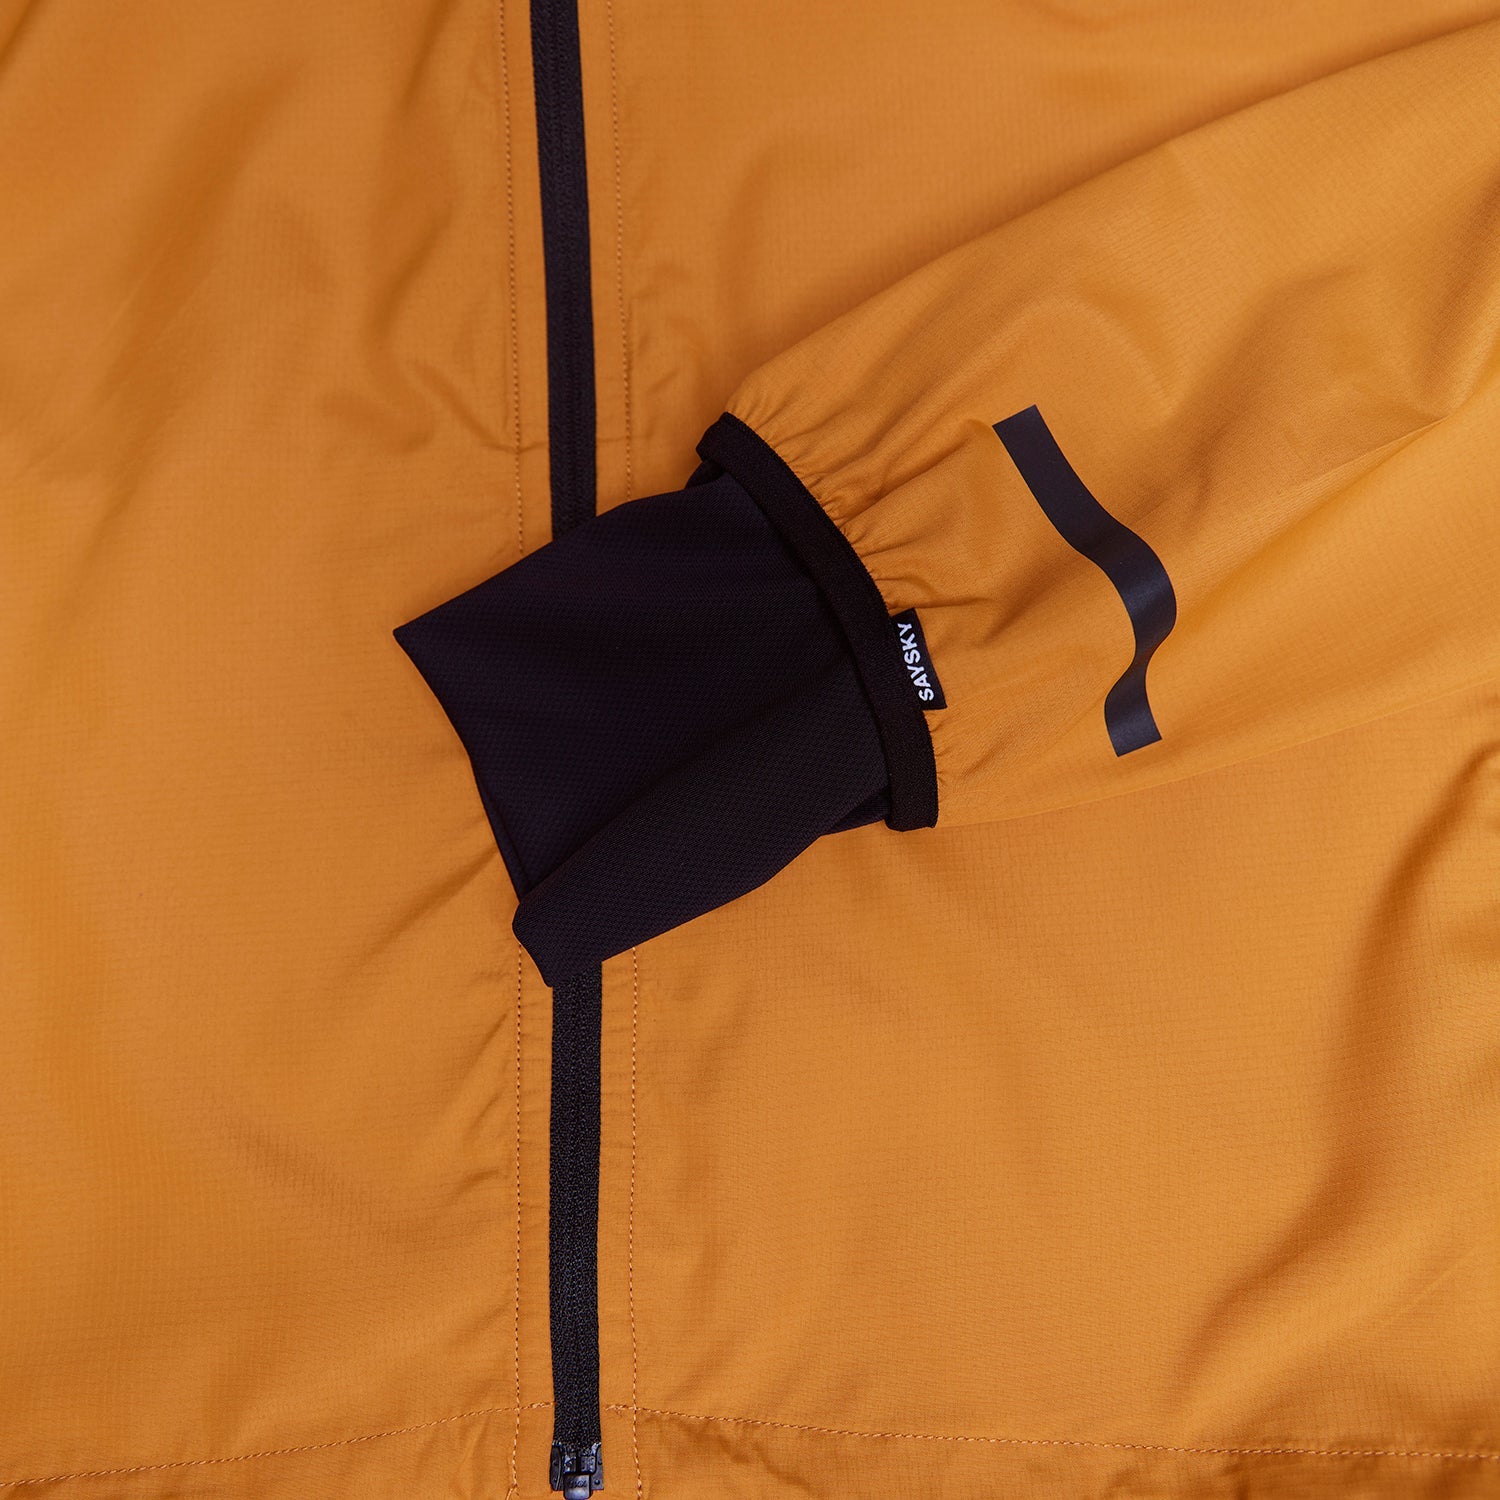 ランニングジャケット IMRJA01 Clean Pace Jacket - Golden Oak [ユニセックス]